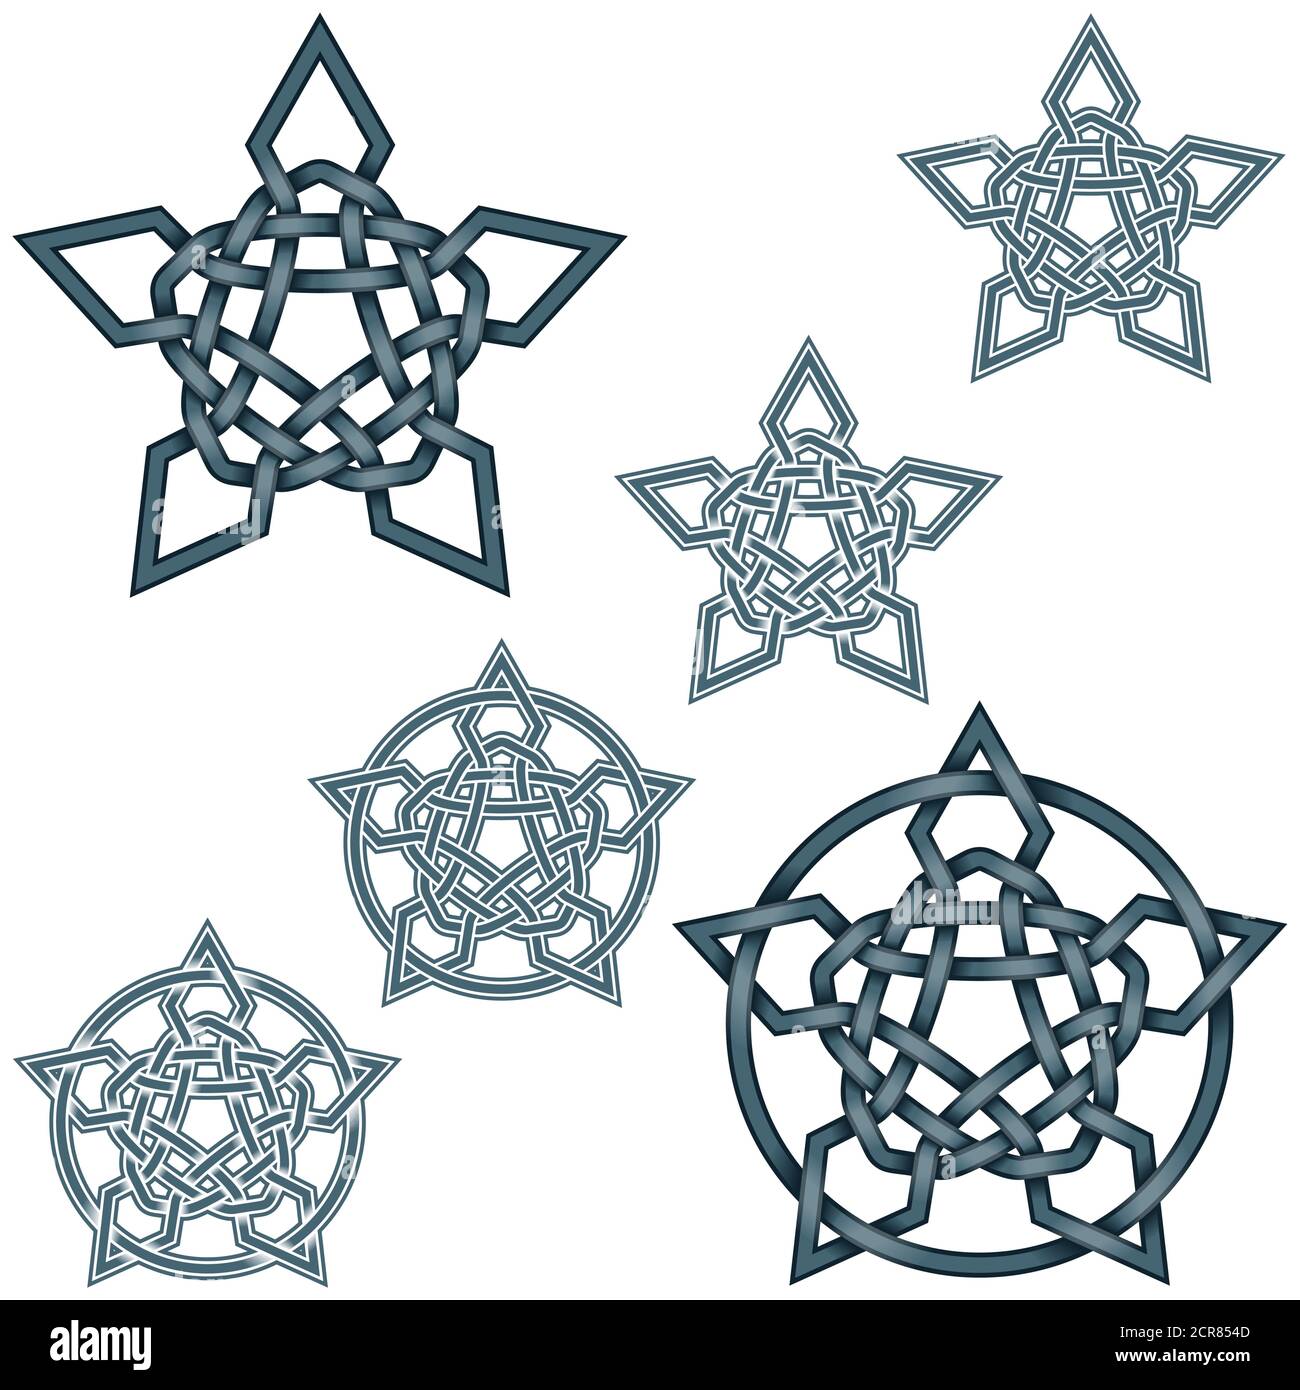 Illustration vectorielle d'étoiles entrelacées dans le style celtique entouré d'un cercle, facile à modifier et à changer de couleur, le tout sur fond blanc. Illustration de Vecteur